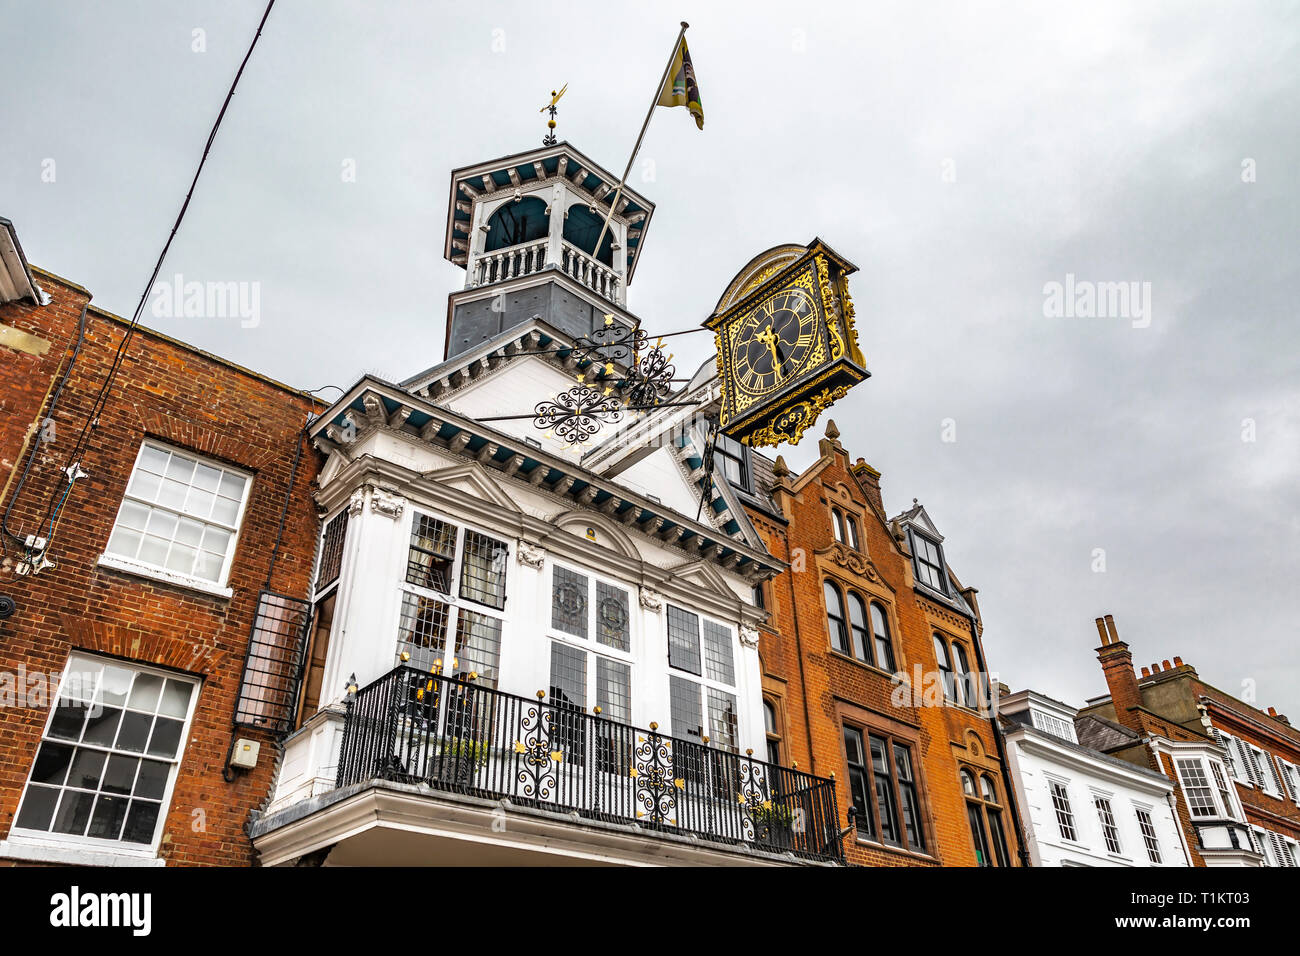 Guildford, Großbritannien - 23 März, 2019: Blick auf die guildhall historische Uhr im Zentrum der Stadt High Street der mittelalterlichen Stadt Guildford, Ger Stockfoto